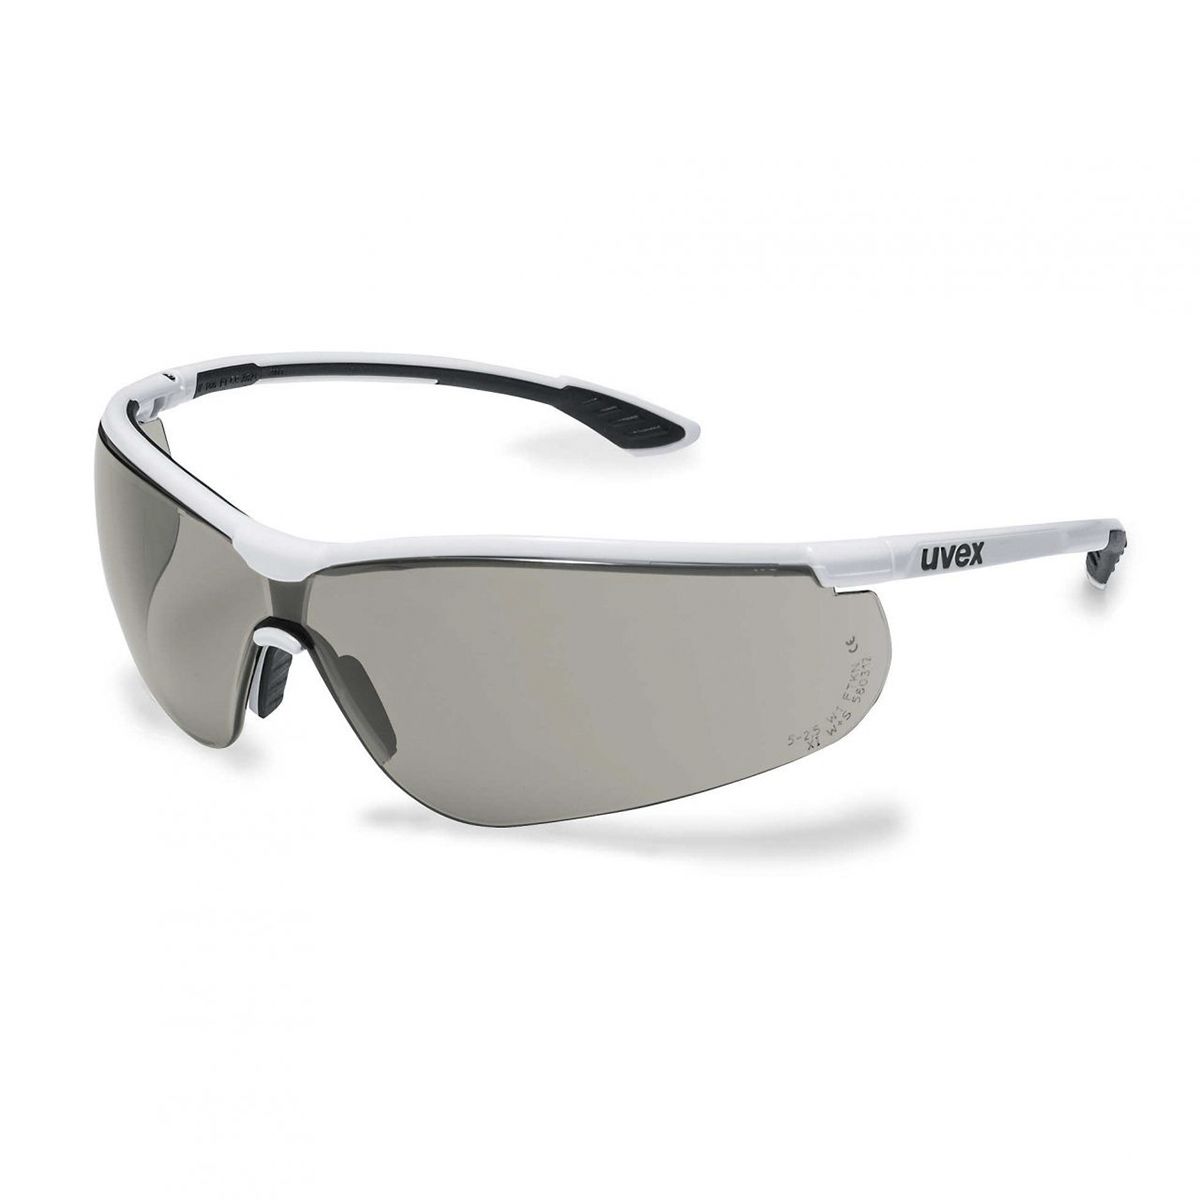 Gafas de seguridad Uvex Sportstyle, color de lente Gris, protección UV, antirrayaduras, antivaho